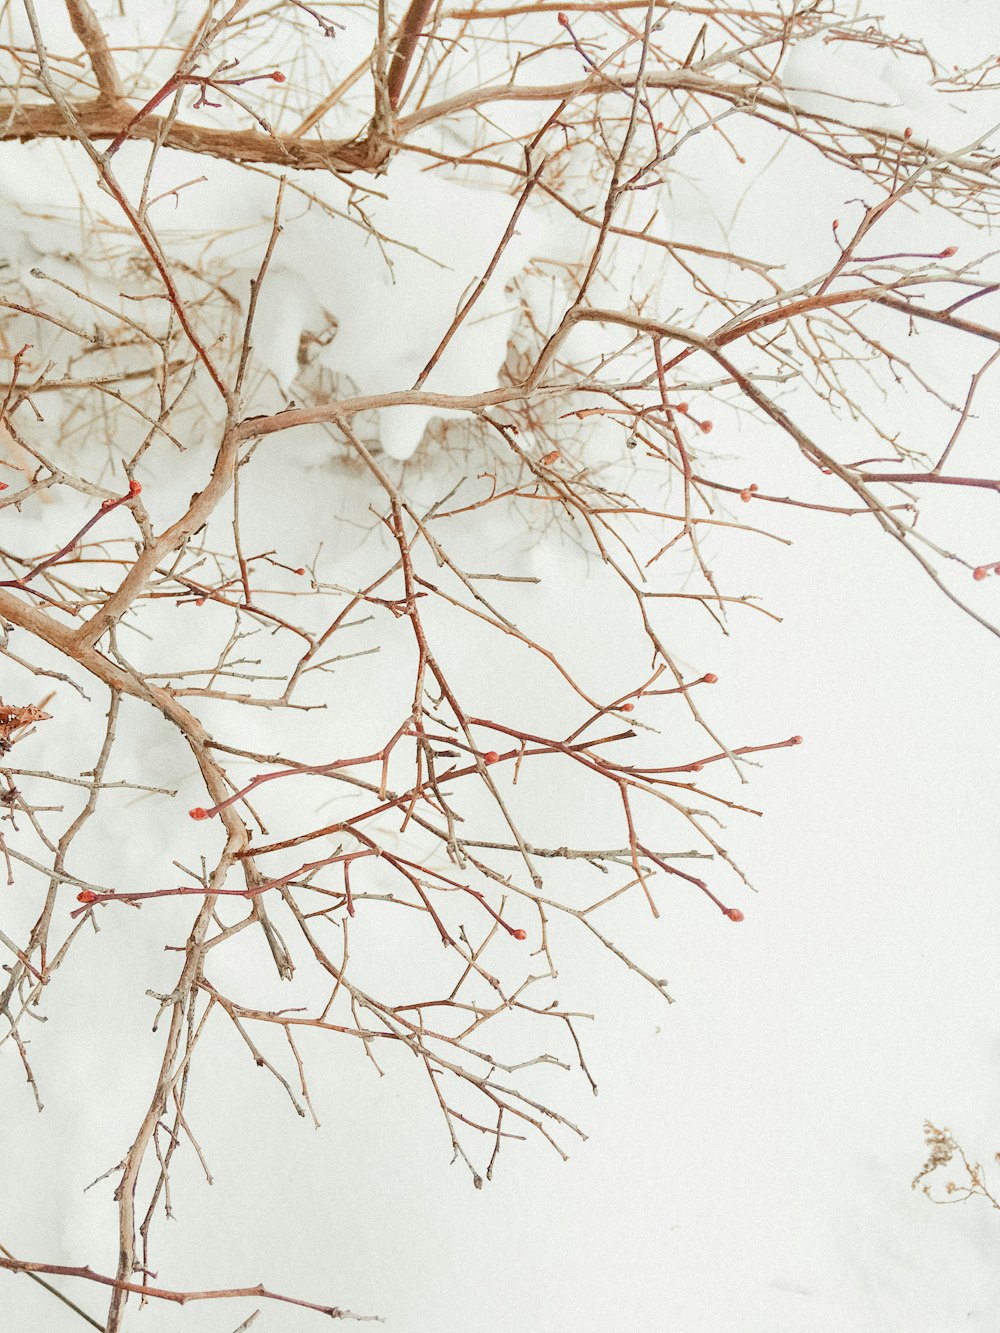 branche d’arbre brune recouverte de neige blanche